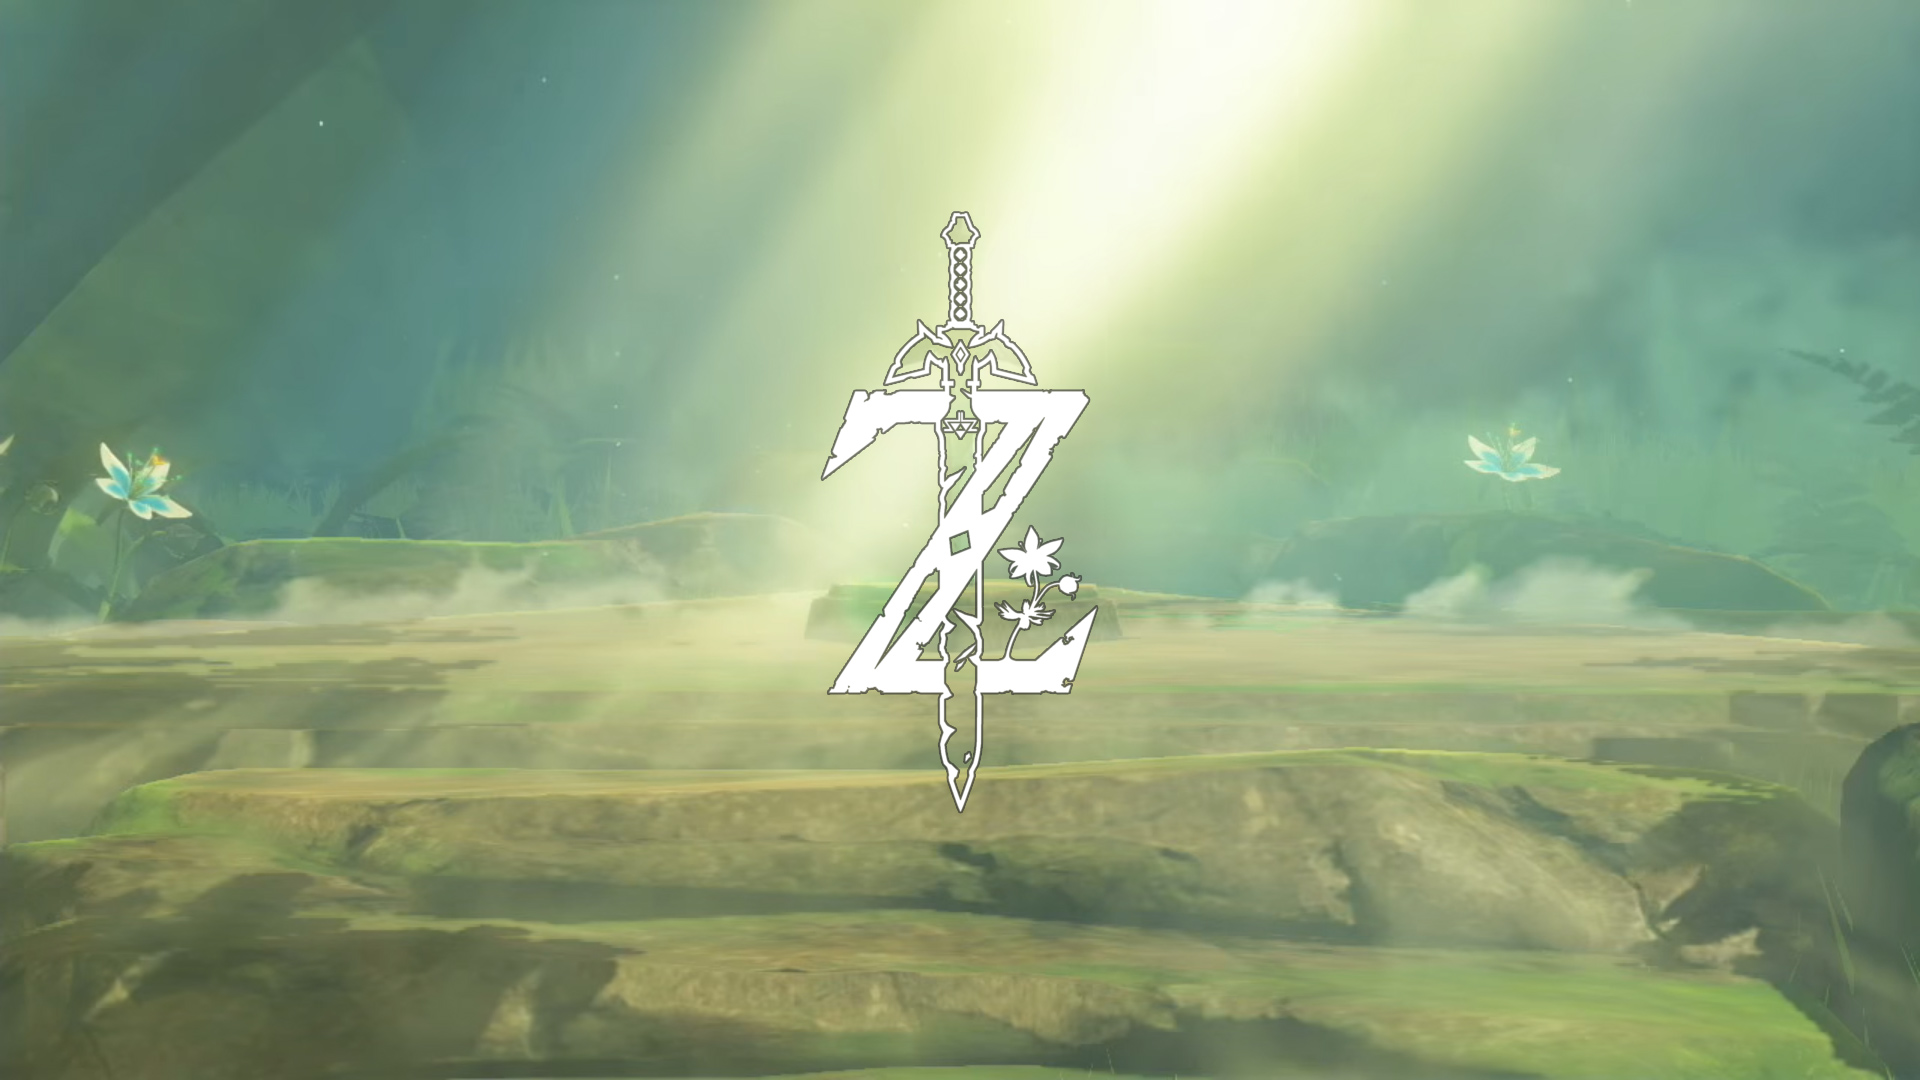 nintendo, video game, the legend of zelda: breath of the wild, zelda